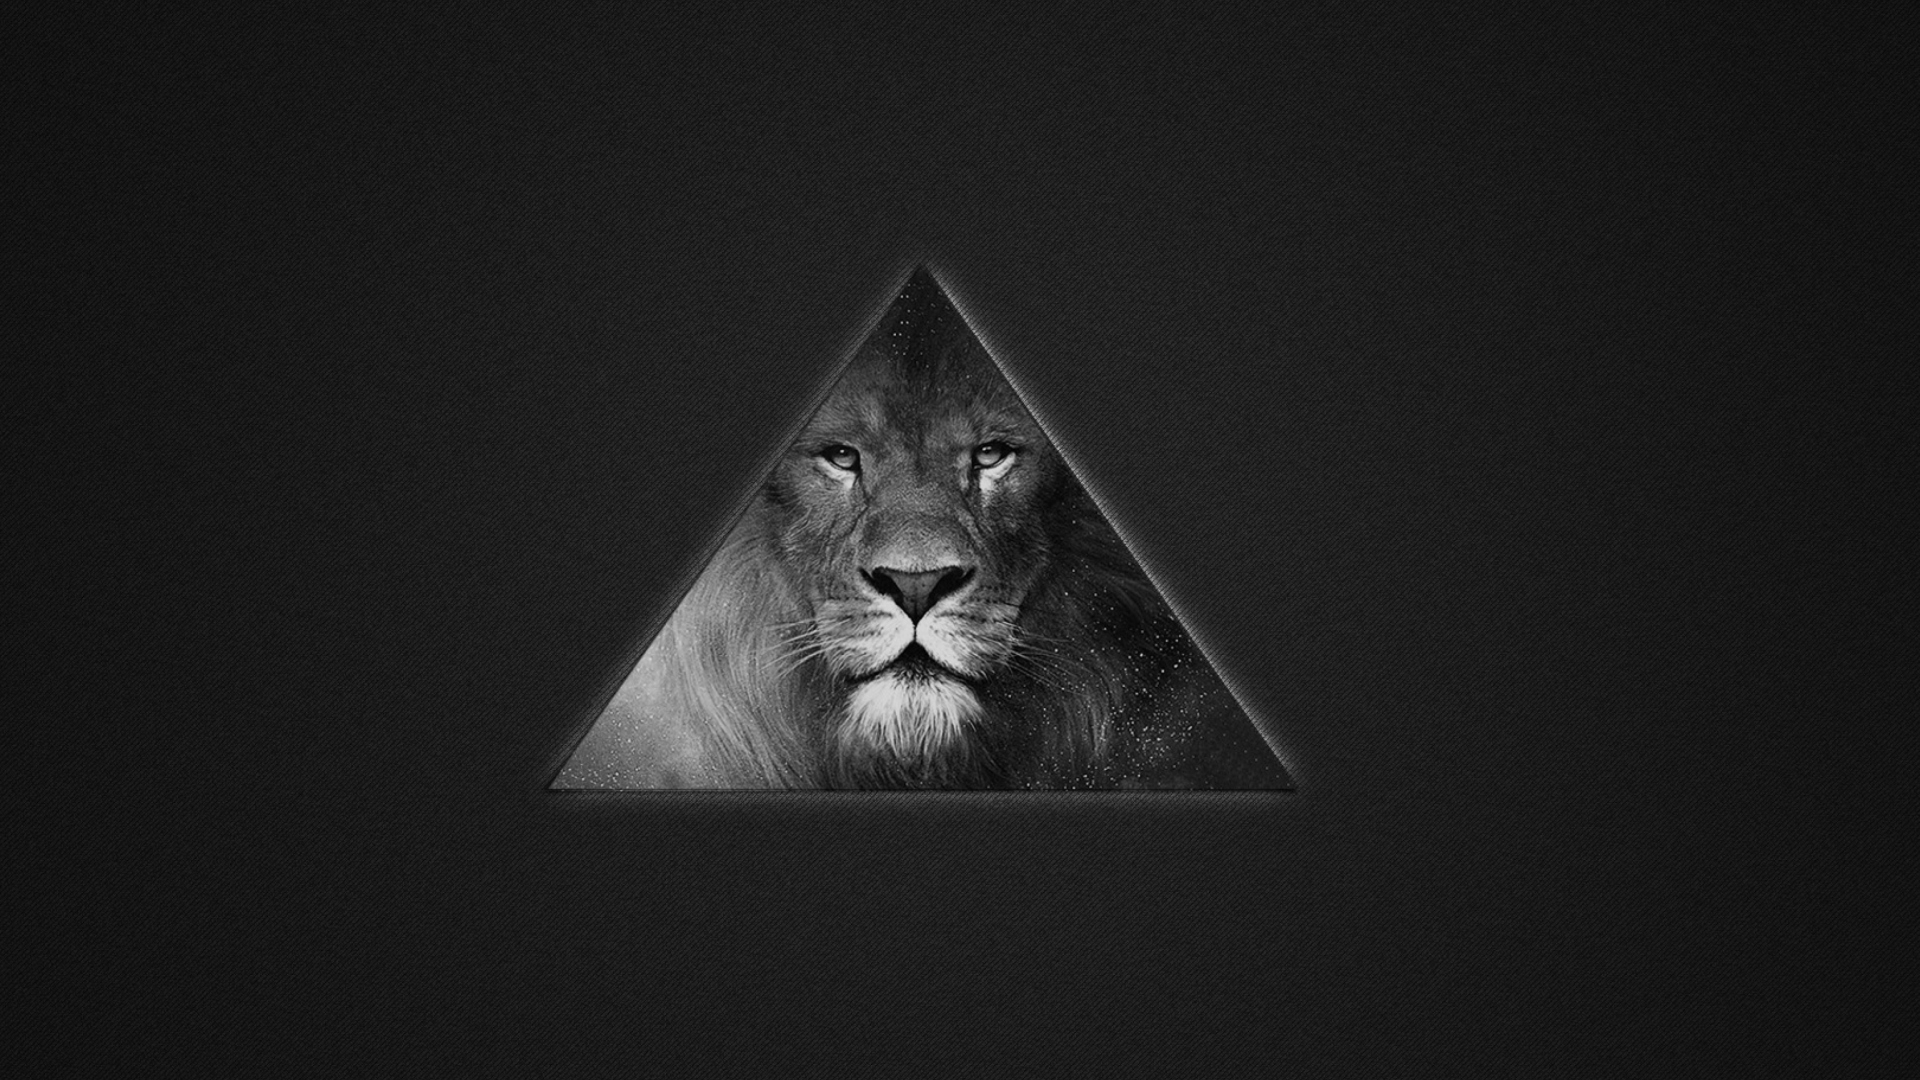 Обои Lion's Black And White Triangle 1920x1080